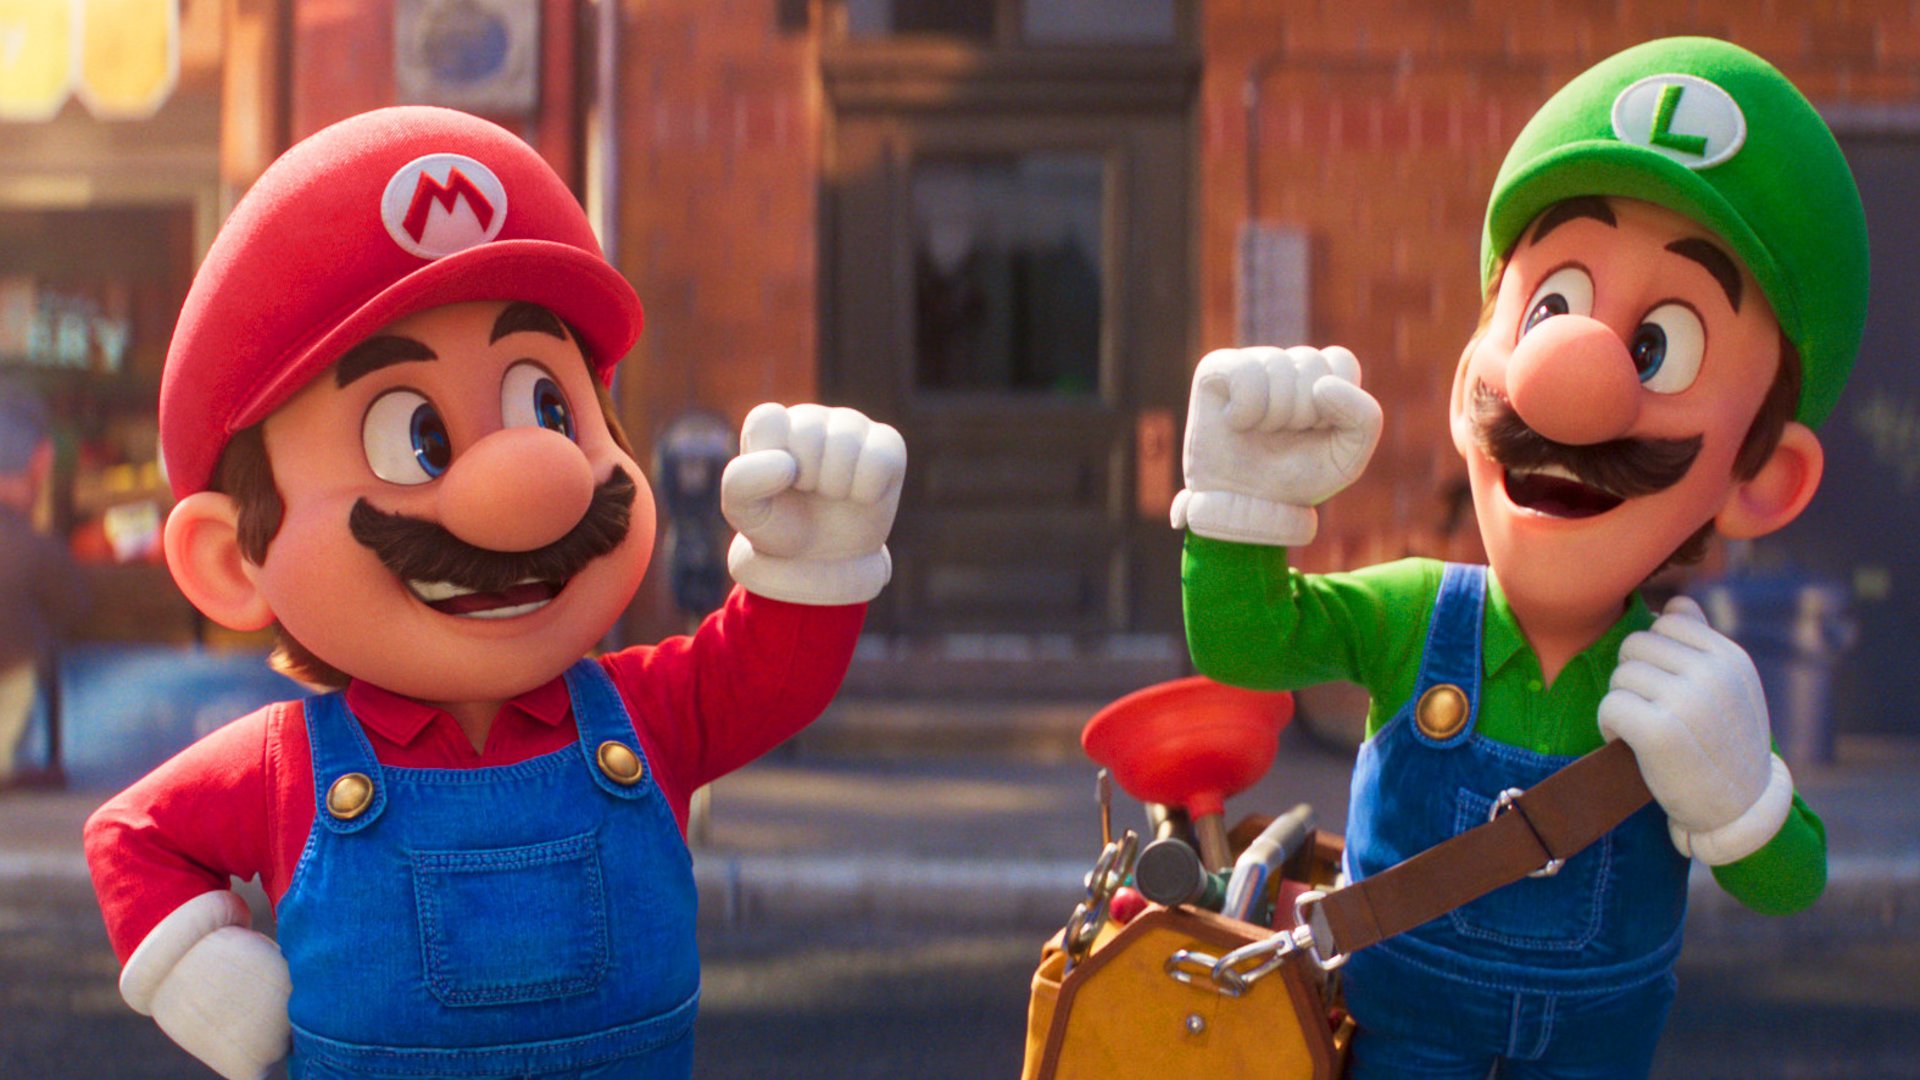 #„Let’s-A Go!“: Fans feiern „Super Mario“-Film mit Marvel-Star als perfekte Nintendo-Unterhaltung